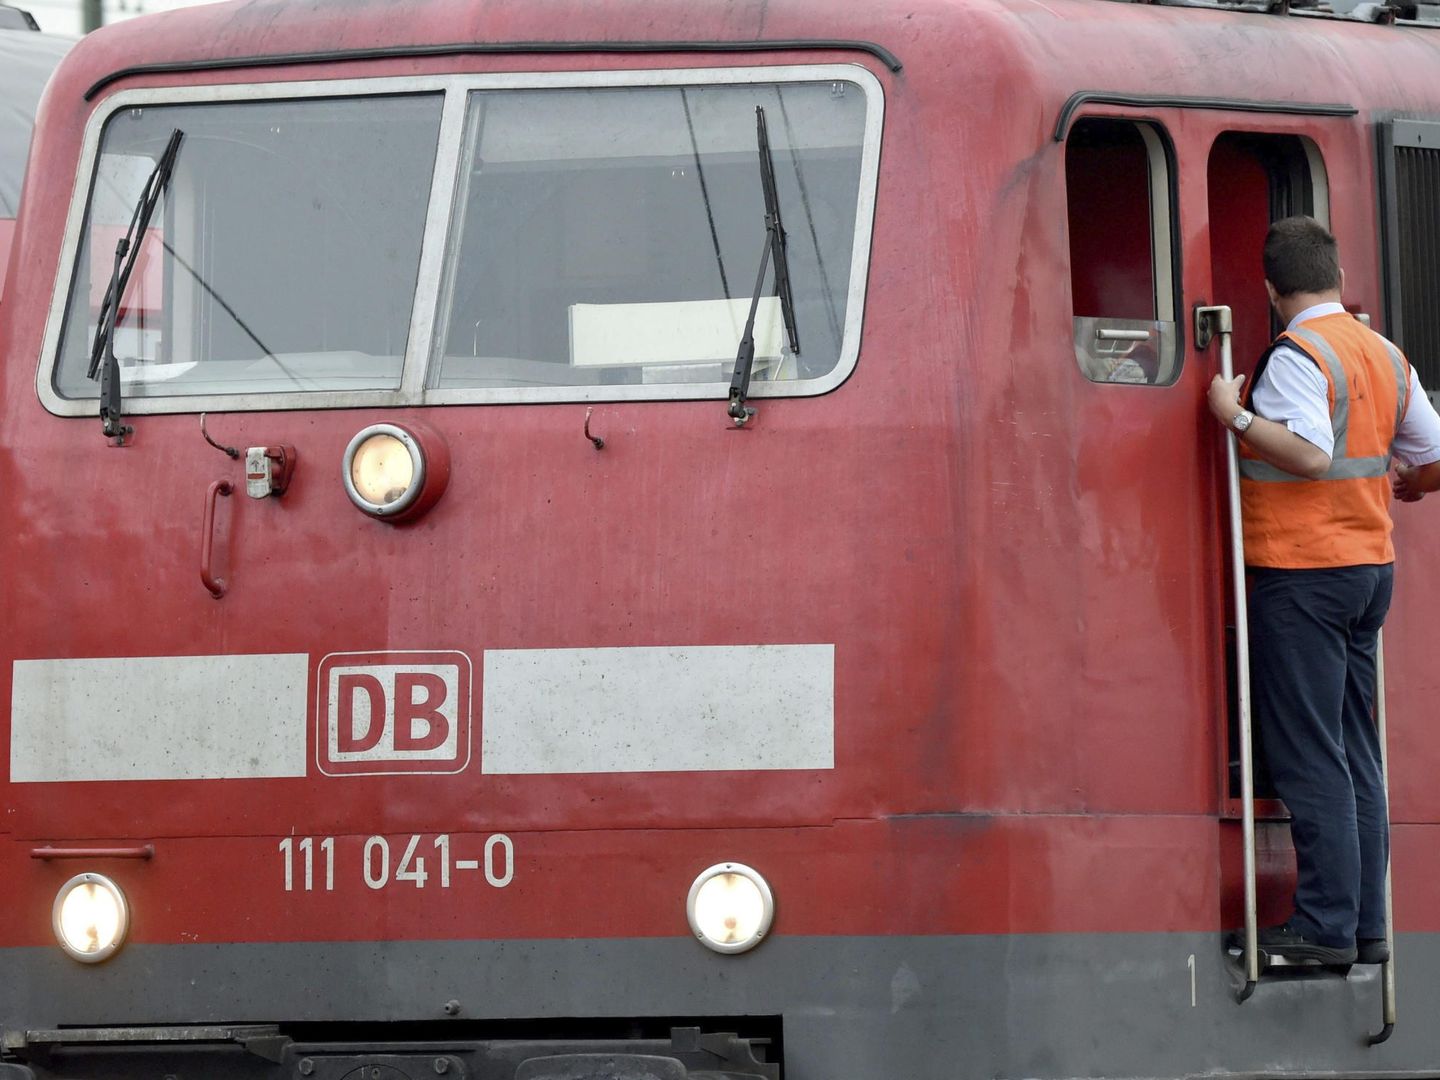 Cabina de una locomotora en Alemania. (Reuters)